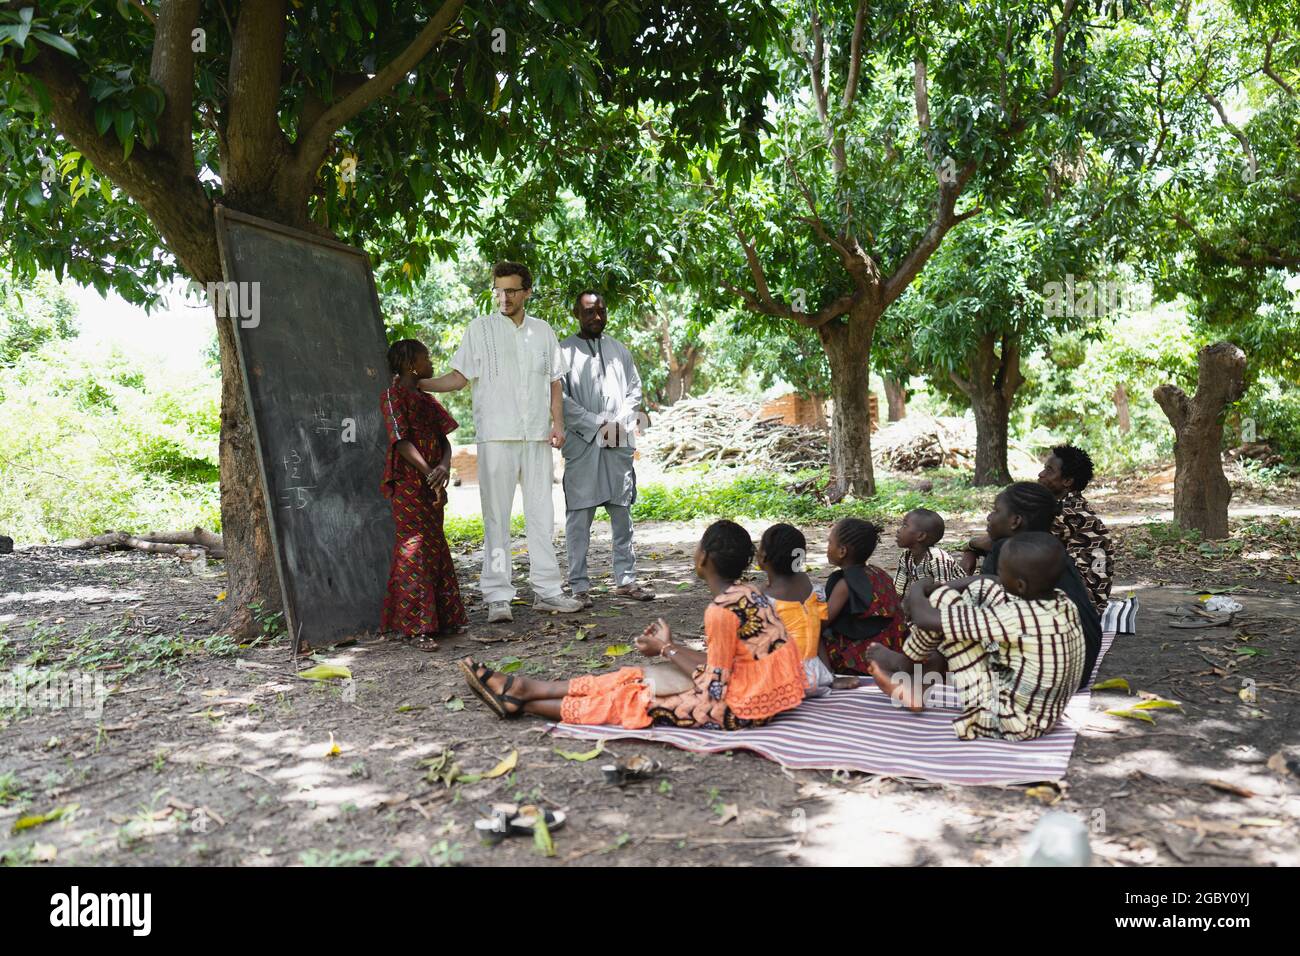 In questa immagine, un alto volontario bianco sta insegnando un gruppo di bambini in un campo estivo all'aperto in un villaggio remoto nell'Africa occidentale Foto Stock